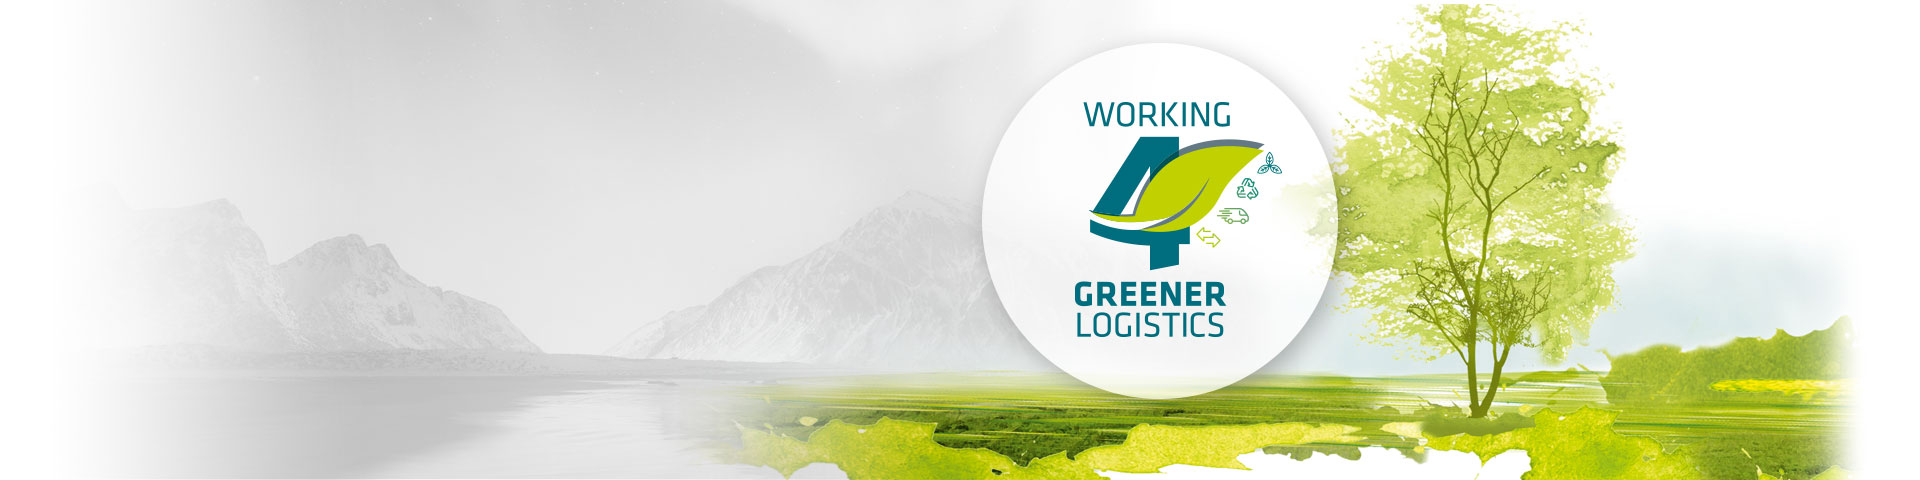 Green Logistics, czyli zielona logistyka